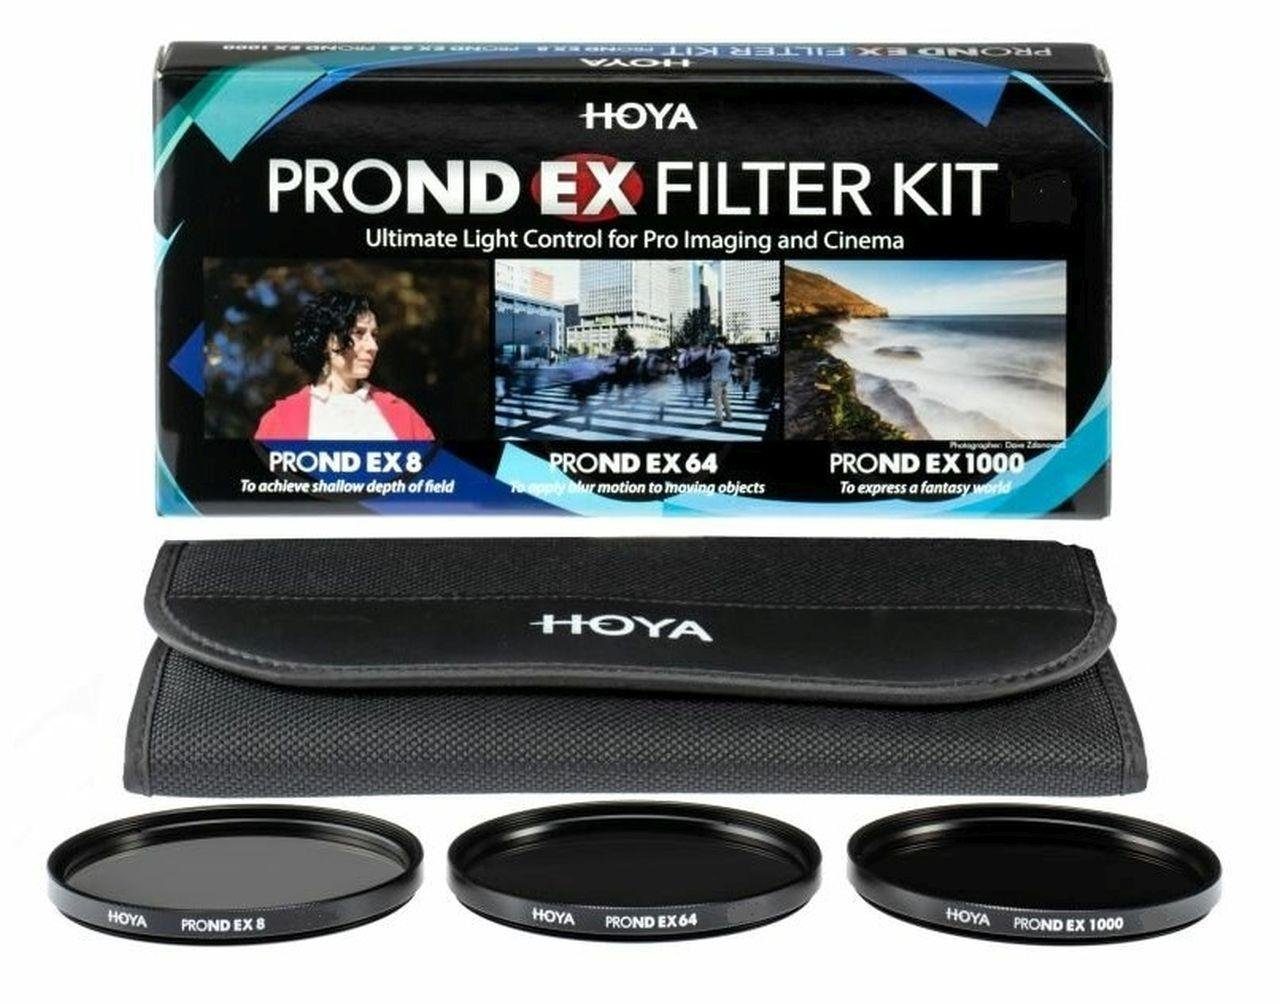 Hoya PROND EX ND Filter Set 8/64/1000 52mm Objektivzubehör